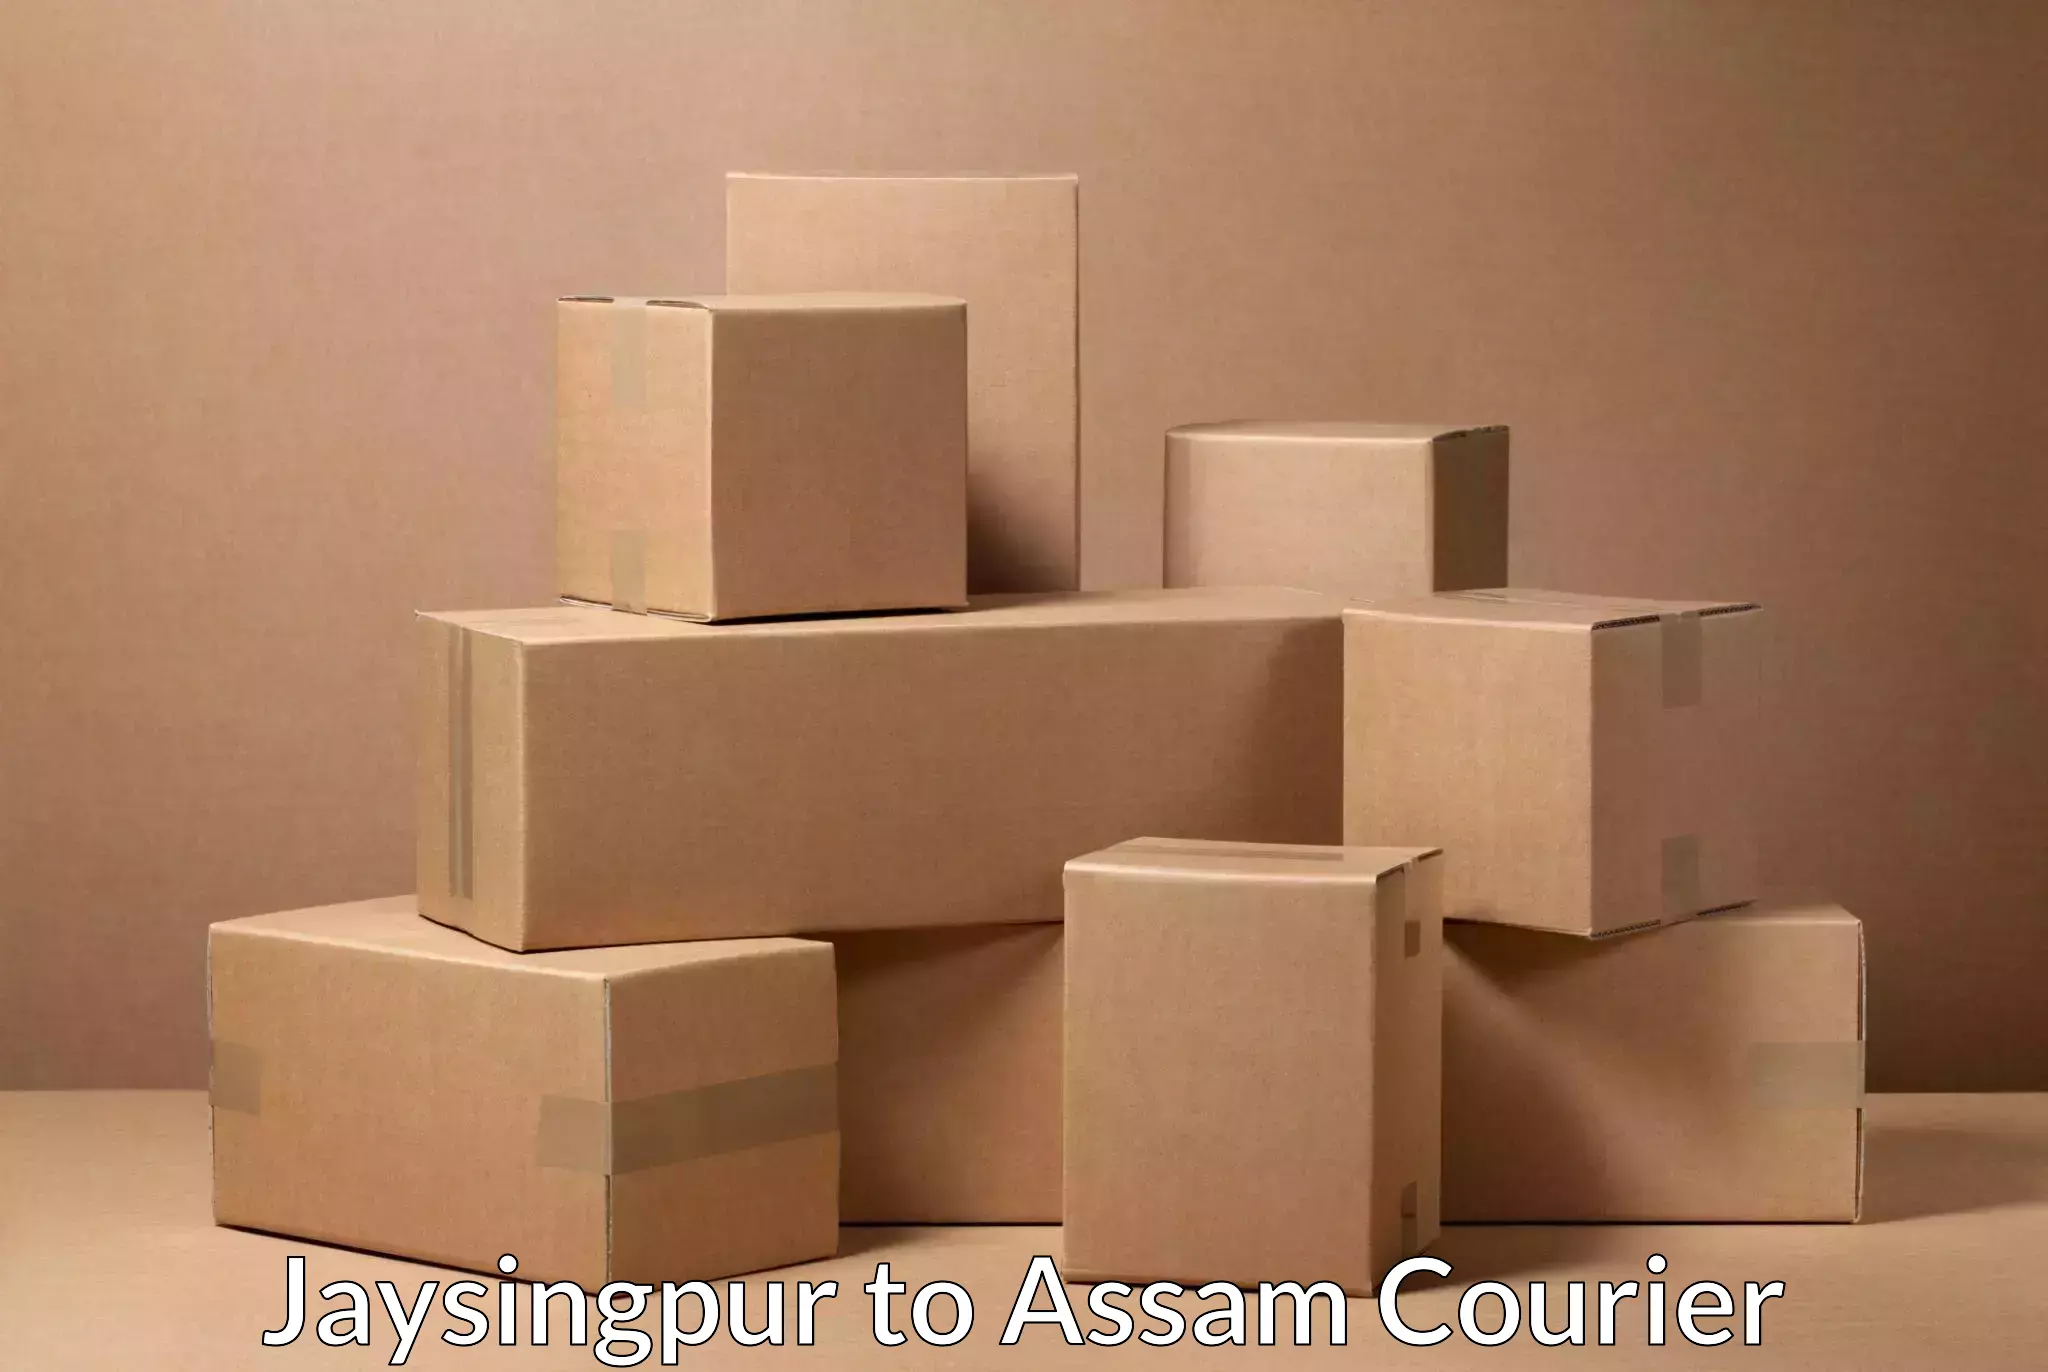 Ocean freight courier Jaysingpur to Rangia